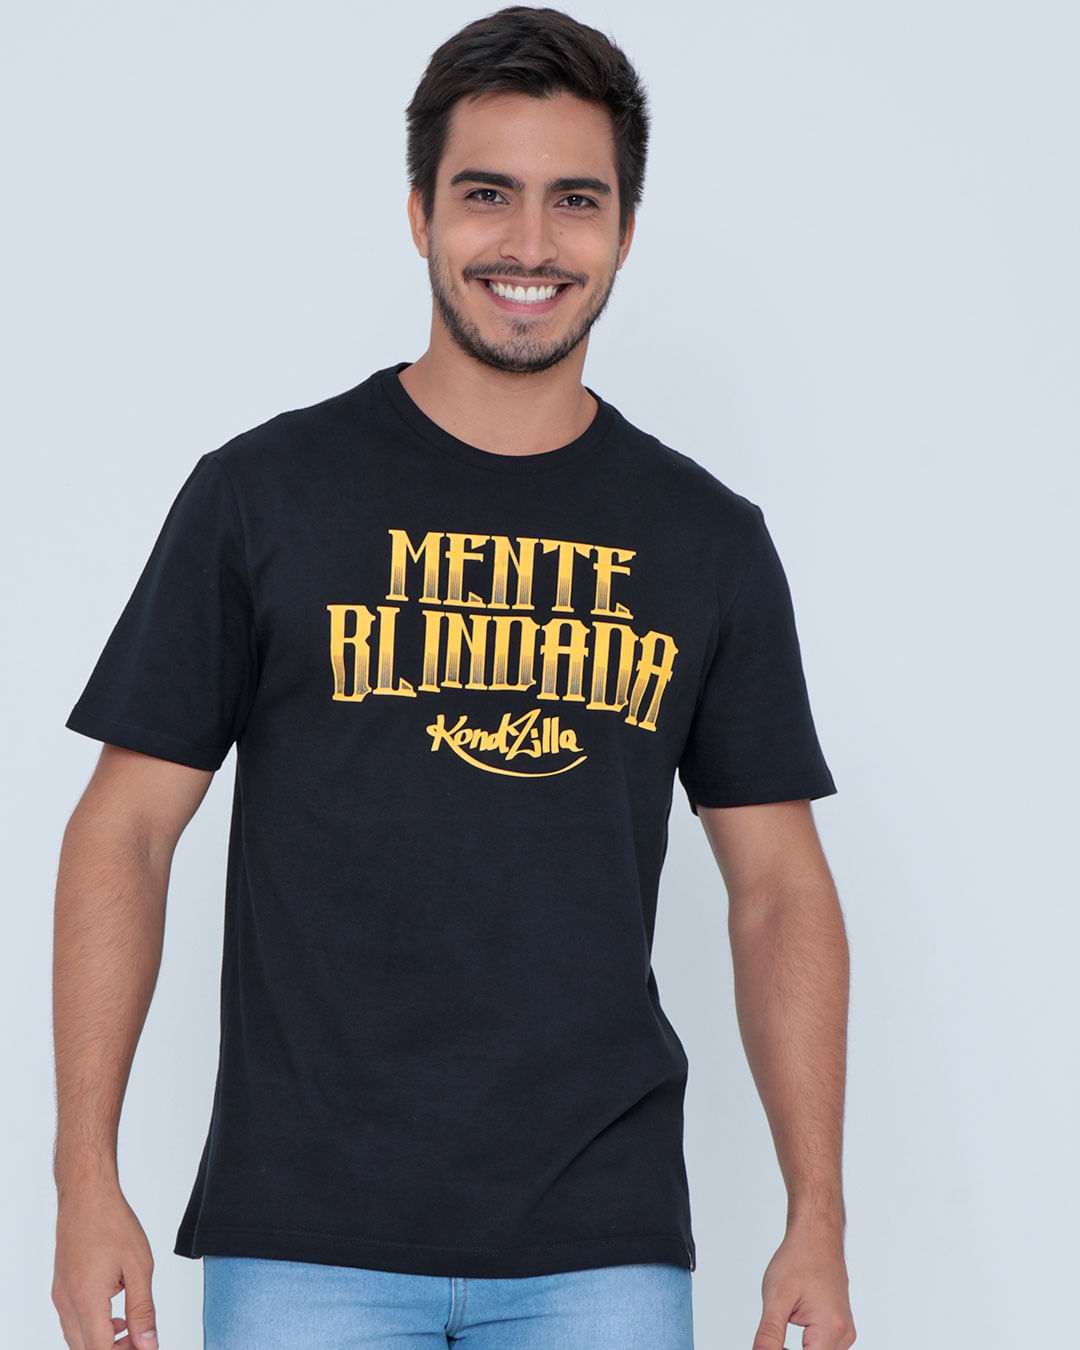 Camiseta-Kdz20005-Mente-Blindurbano---Preto